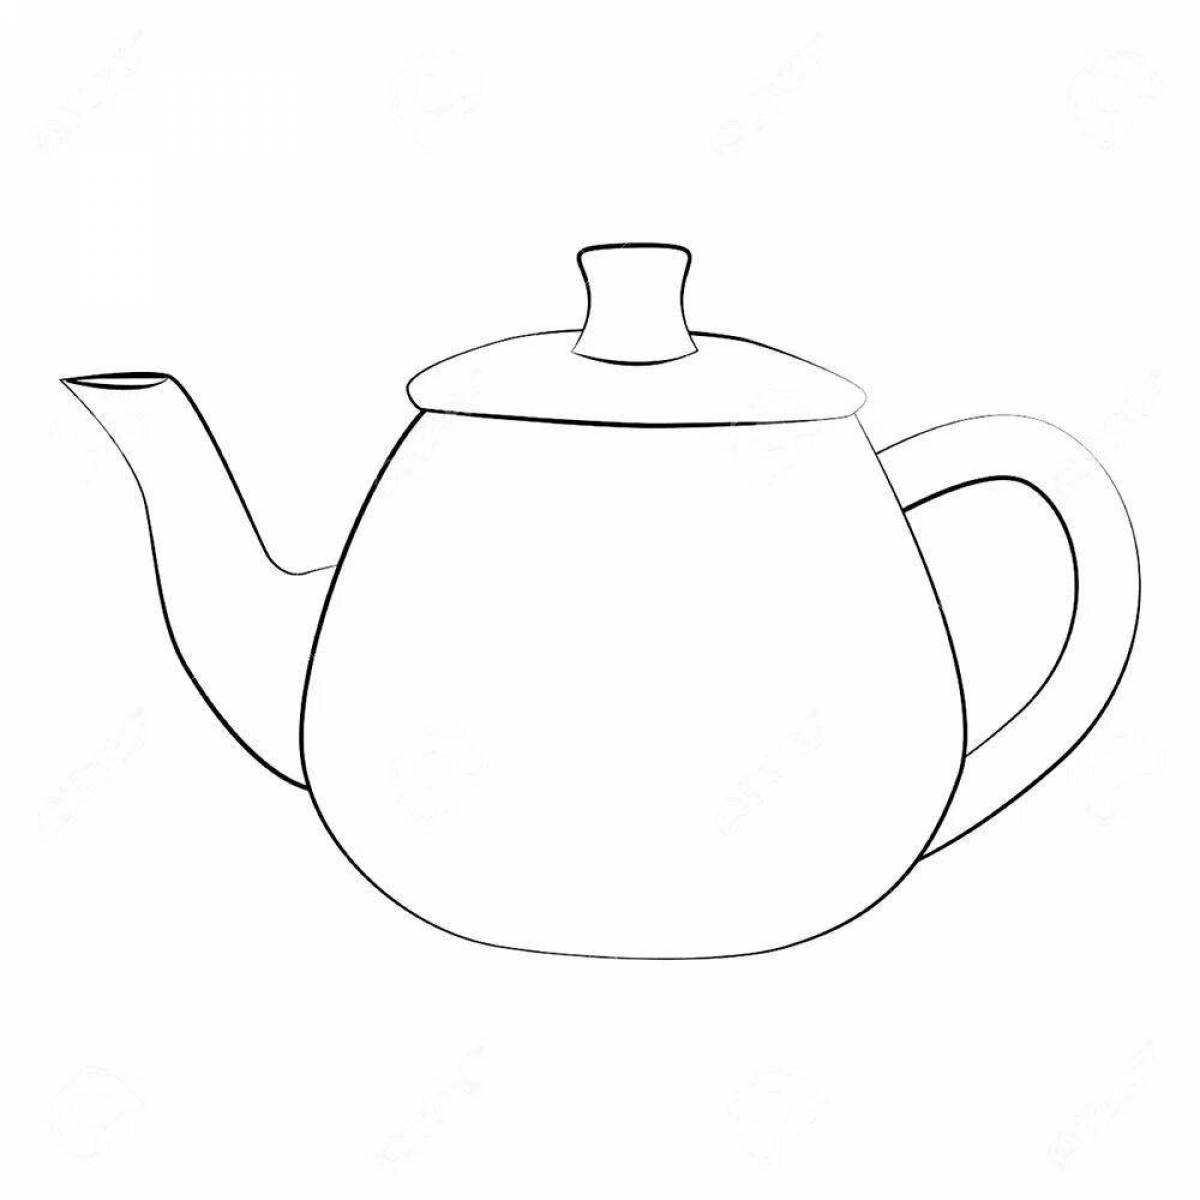 Zani teapot coloring page